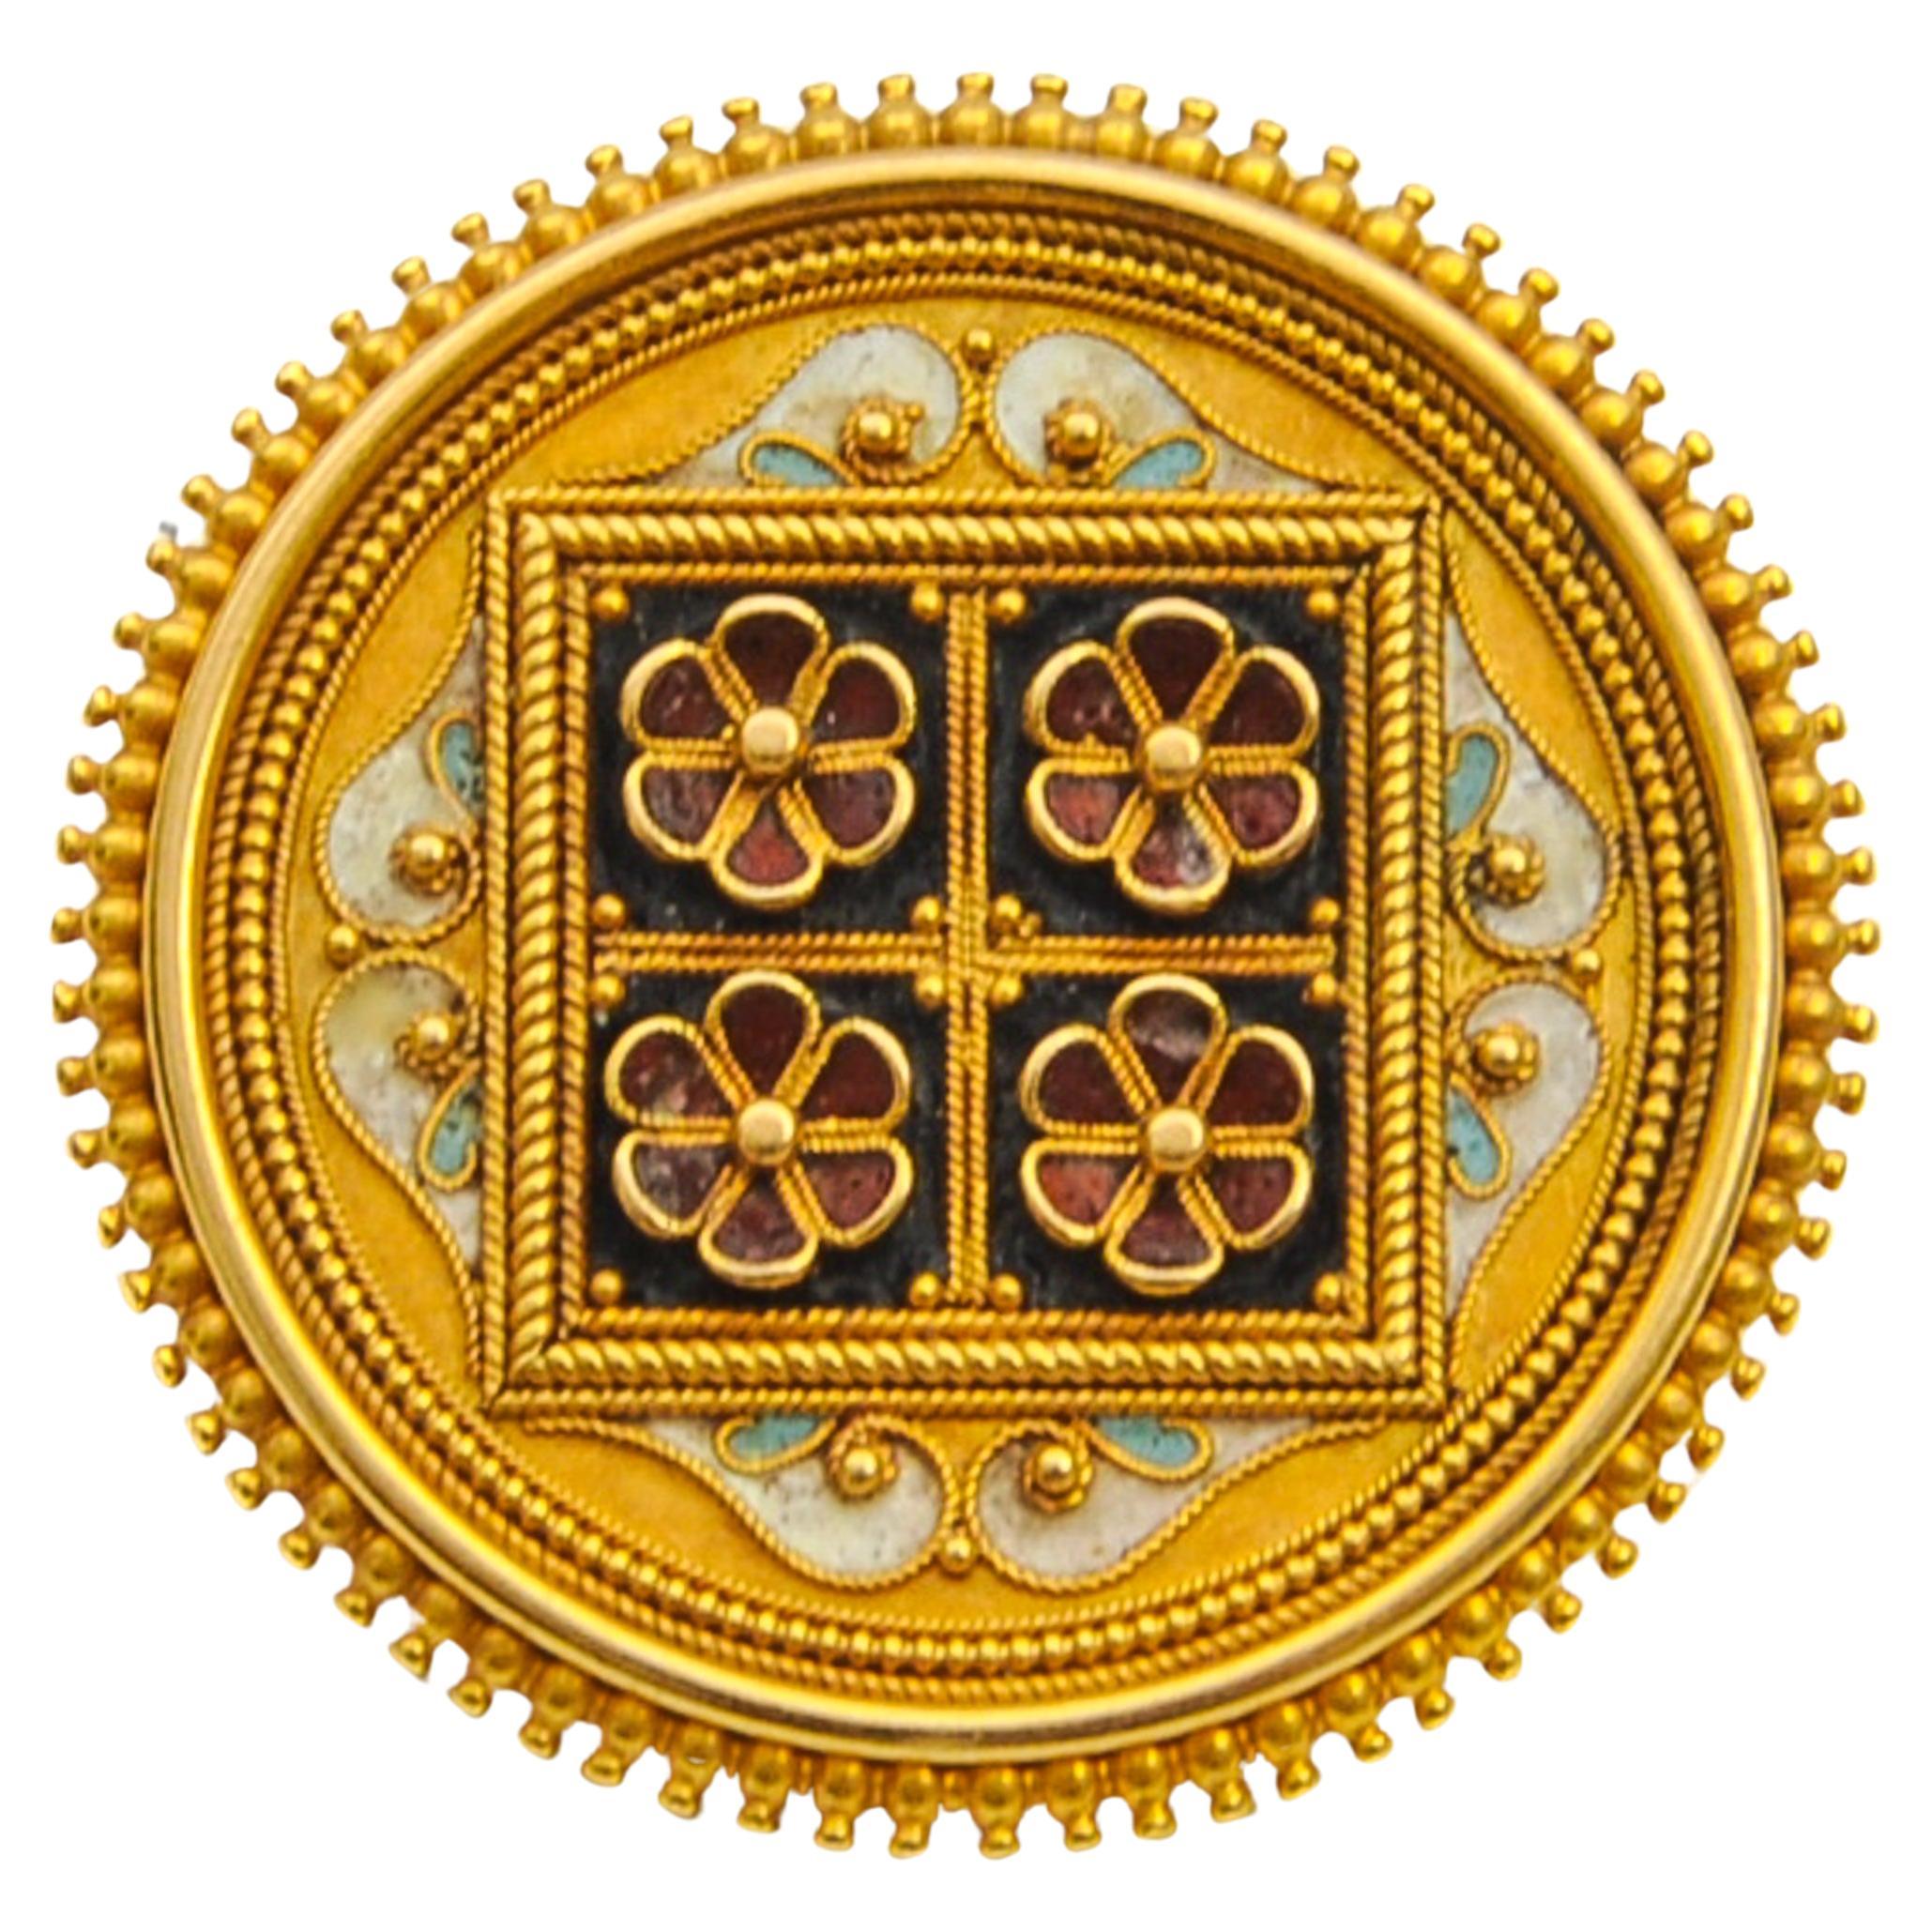 Antike etruskische Revival-Anstecknadelbrosche aus Gold und Emaille mit Blumenmuster